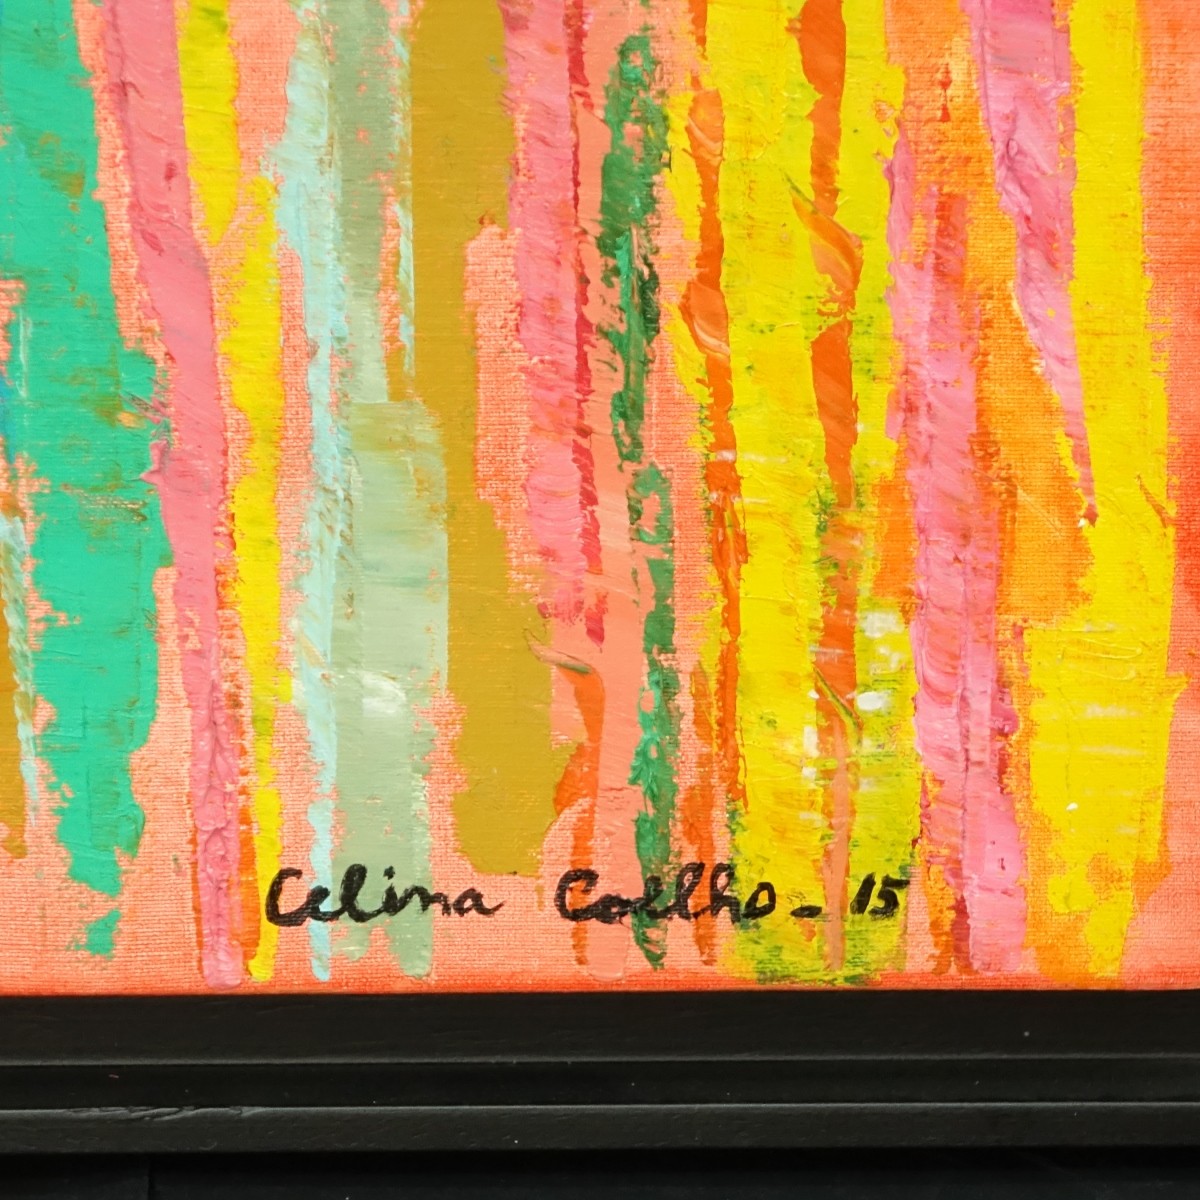 Celina Coelho Oil On Canvas